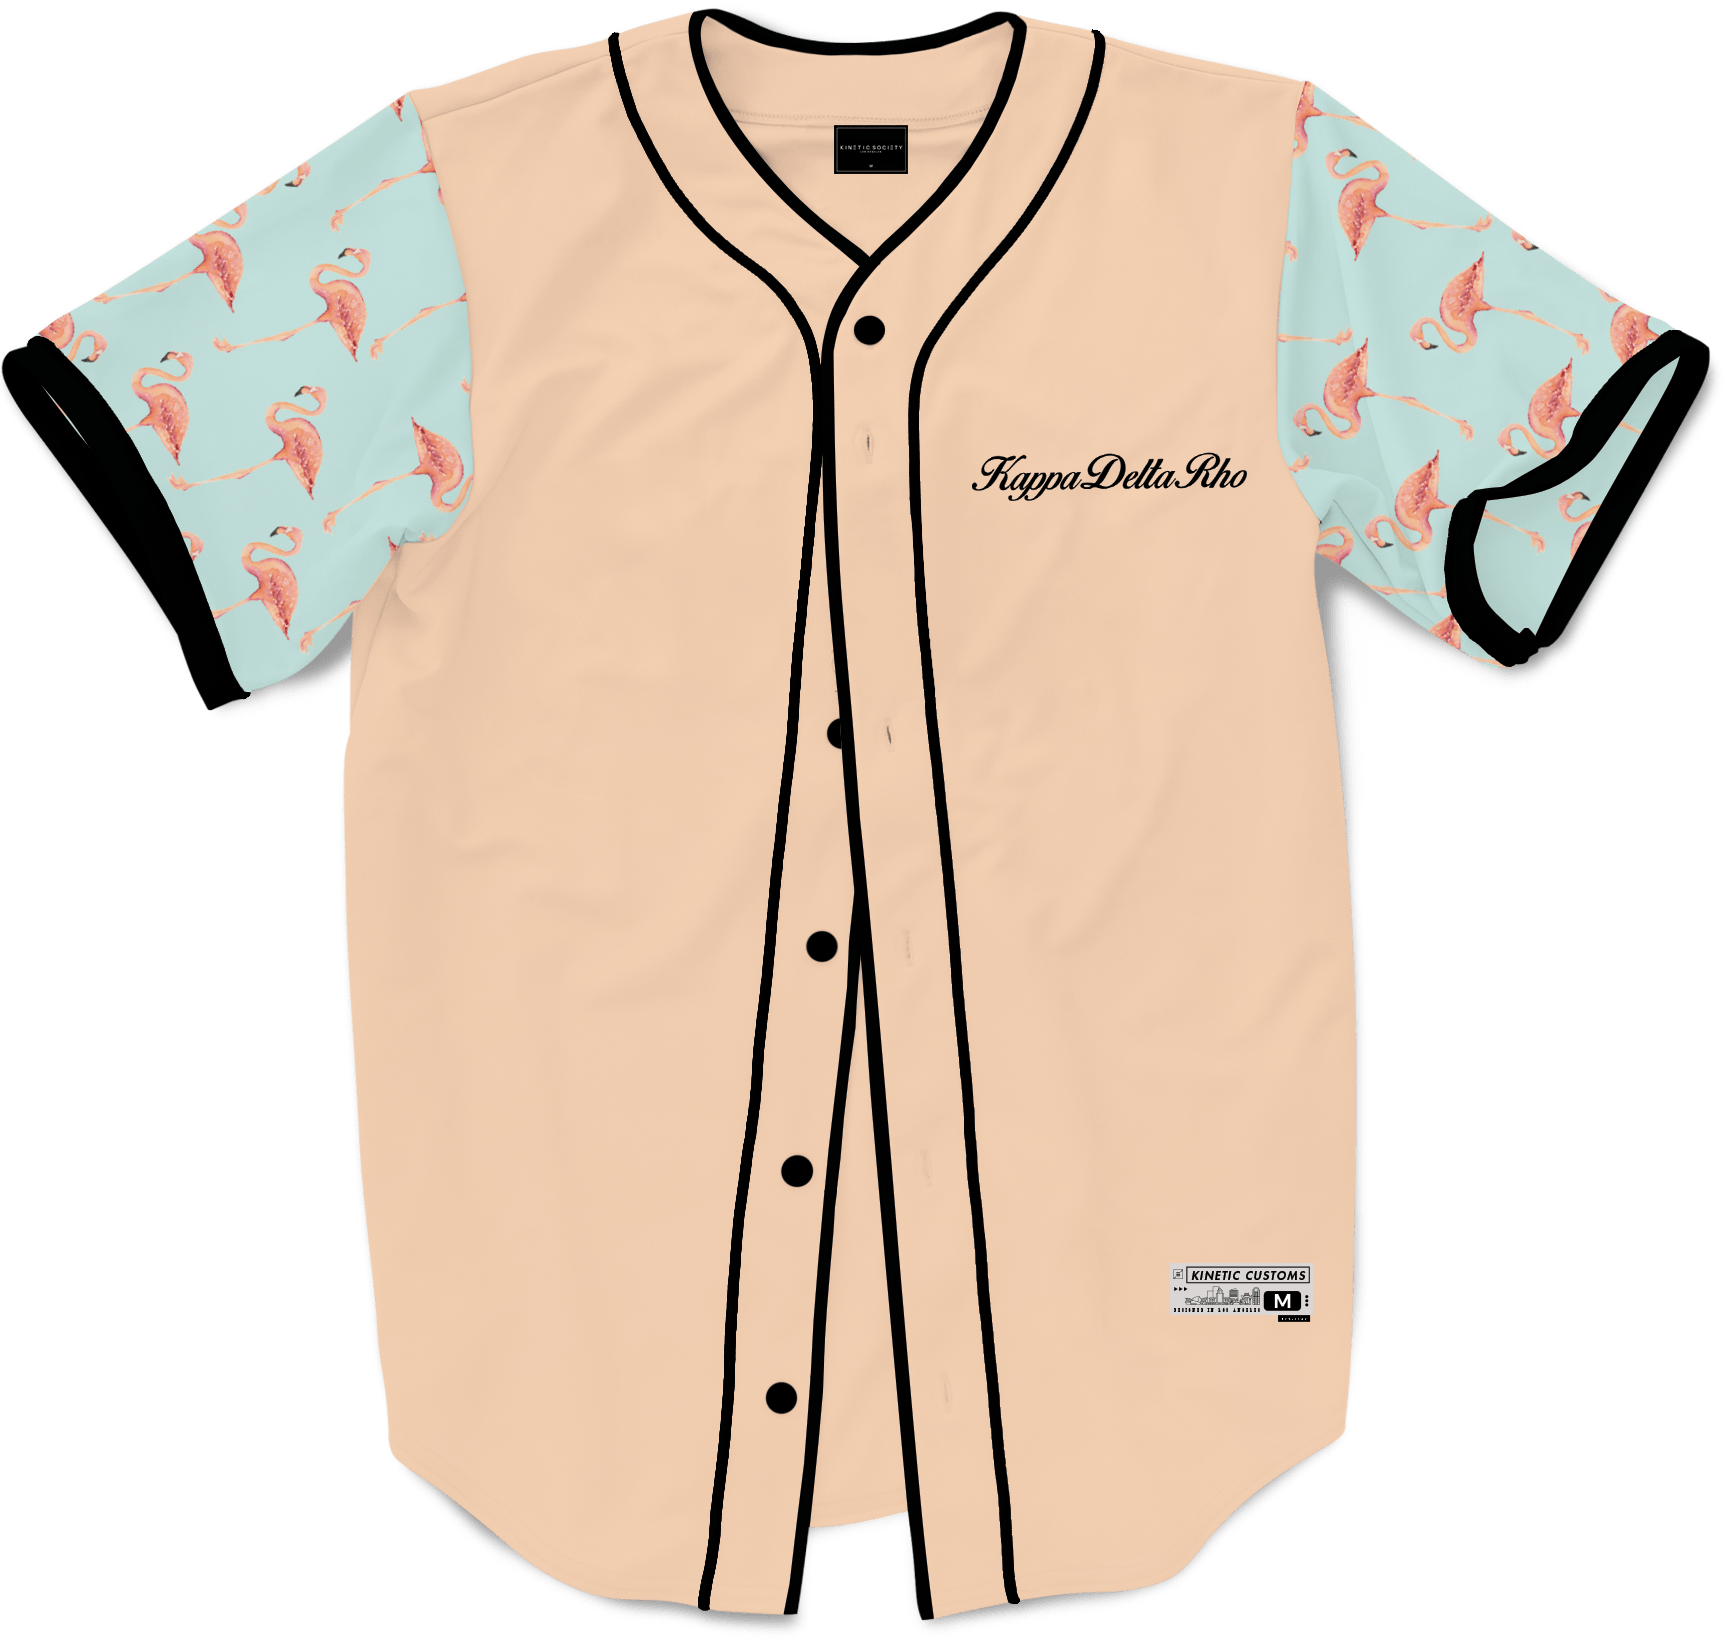 Kappa Delta Rho - Flamingo Fam Baseball Jersey - Kinetic Society